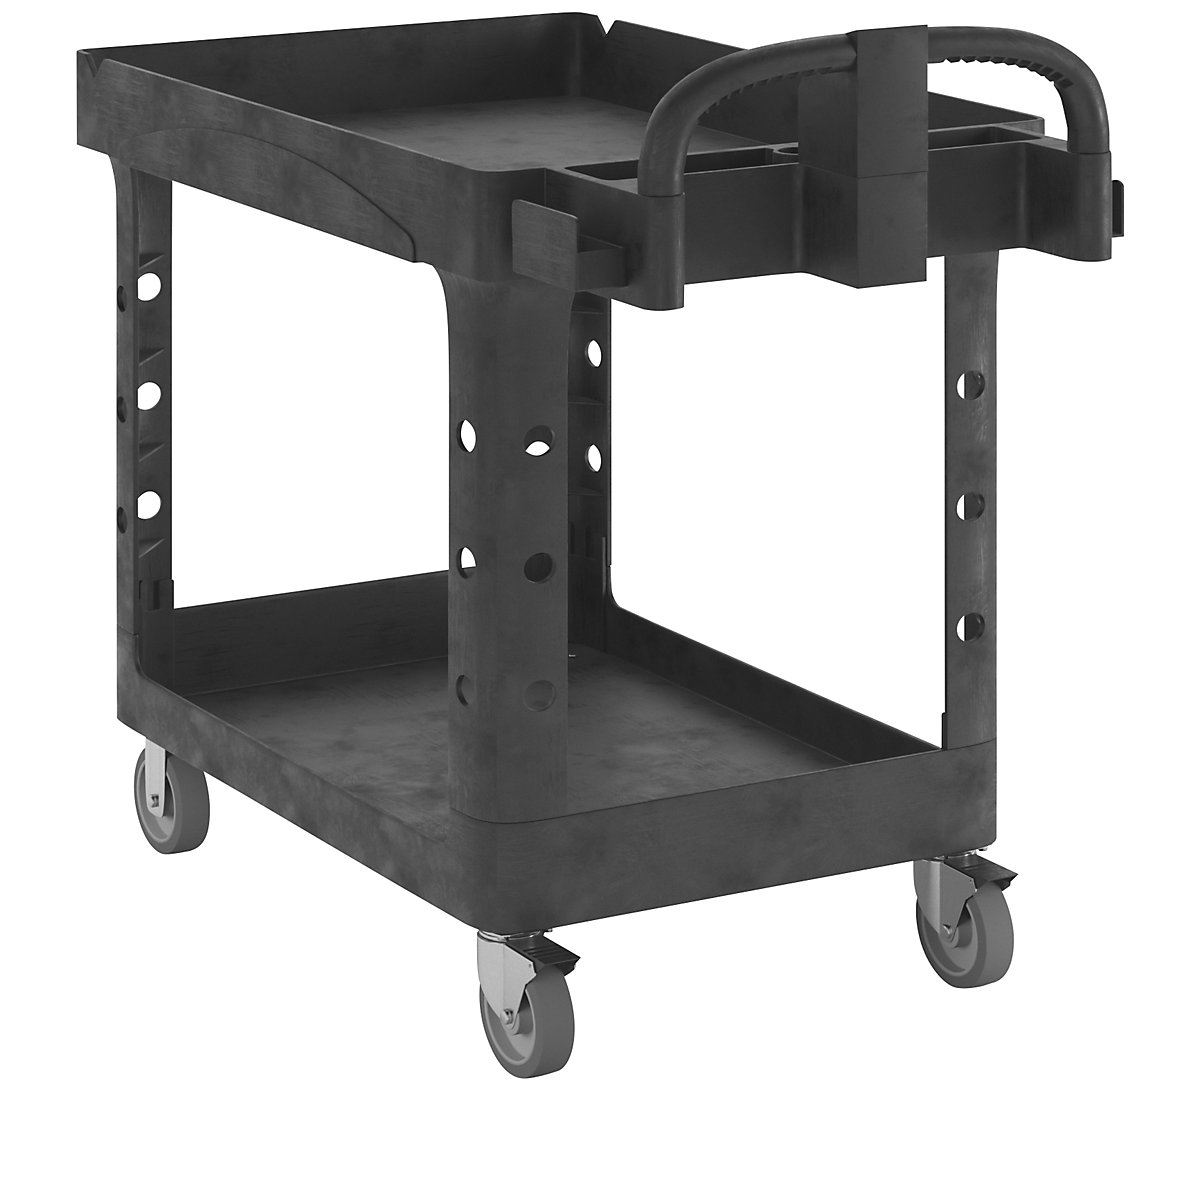 Večnamenski mizni voziček iz umetne mase – Rubbermaid, s poglobitvijo kadice, DxŠxV 1120 x 640 x 980 mm-10